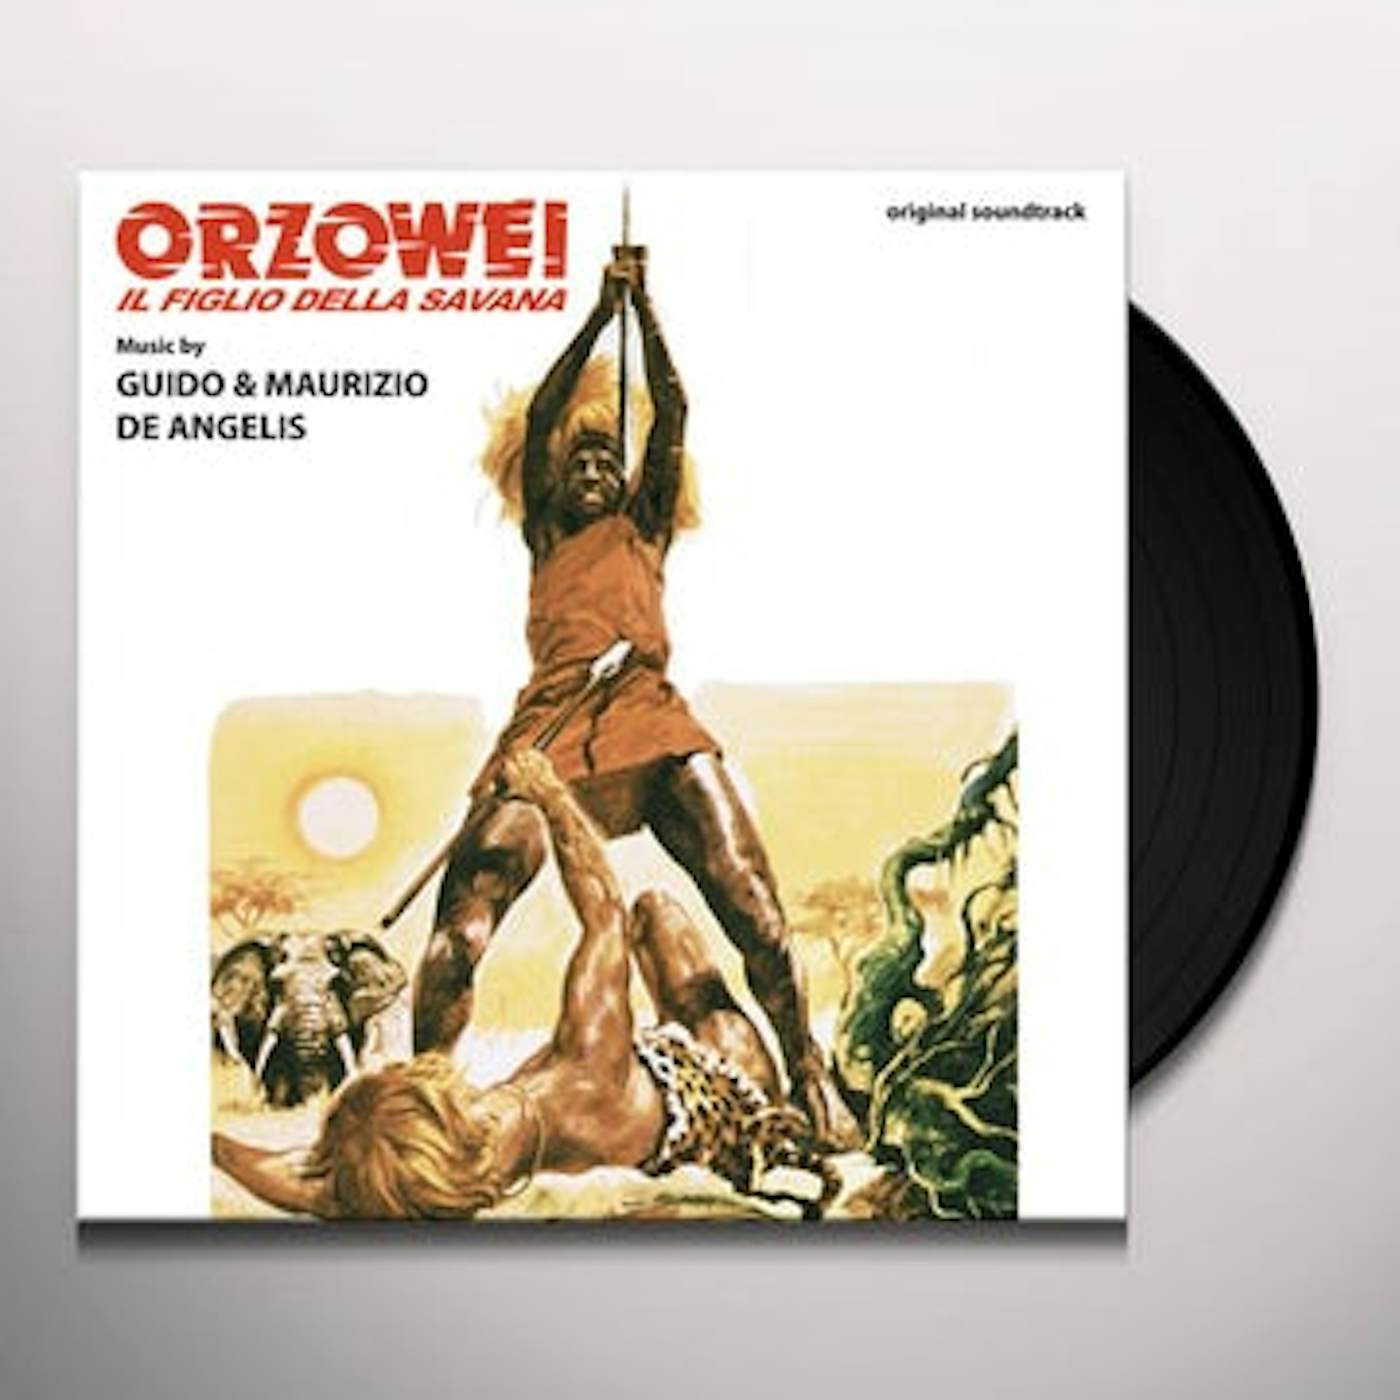 Guido & Maurizio De Angelis ORZOWEI IL FIGLIO DELLA SAVANA / Original Soundtrack Vinyl Record